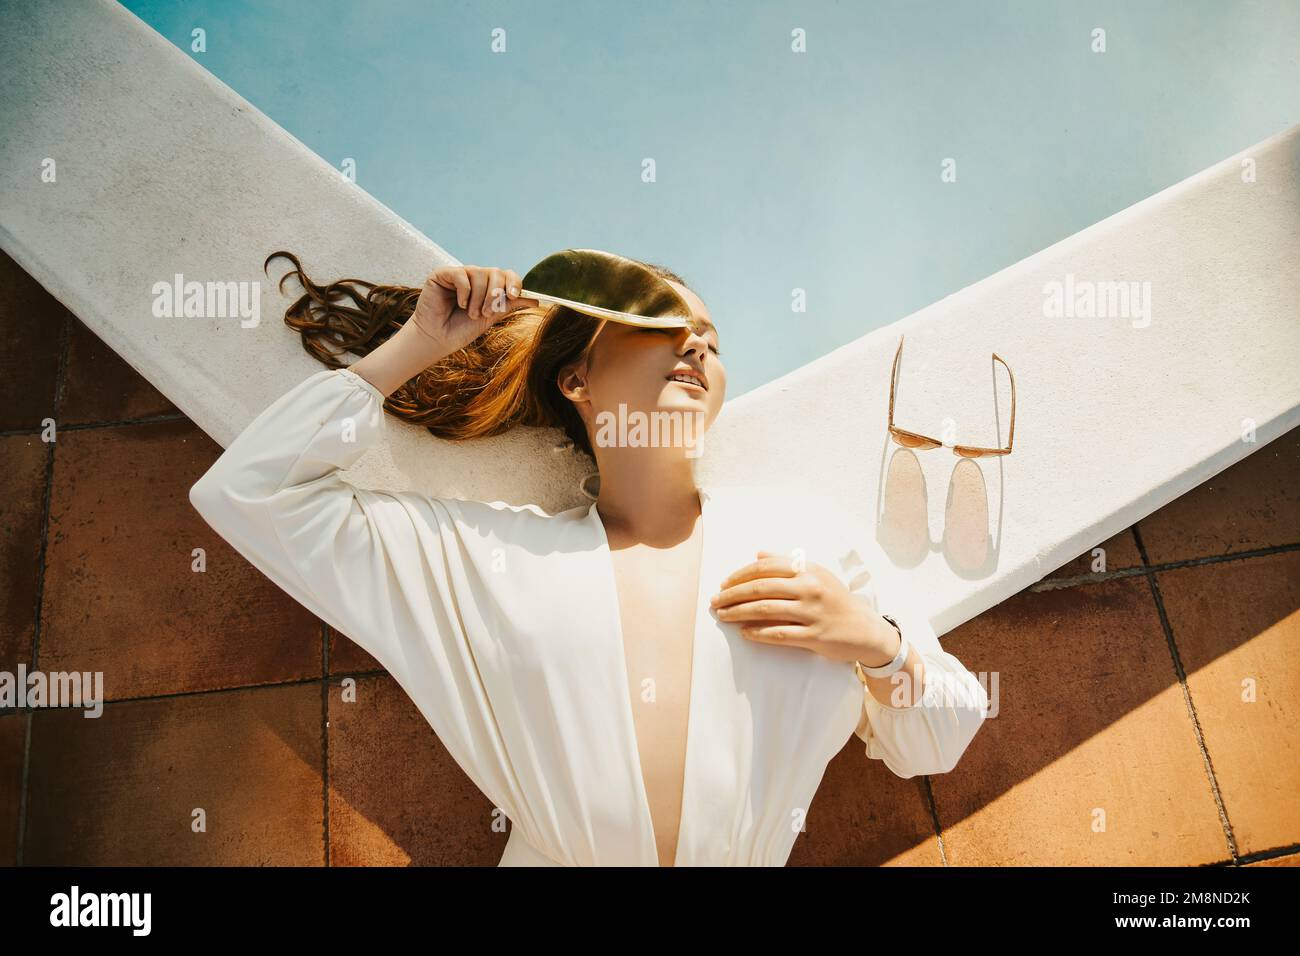 Modefoto eines Models am Außenpool, Bäume, tropischer Stil. Weißer Badeanzug einer Frau mit langen Haaren. Sommerferien, Reisen Stockfoto